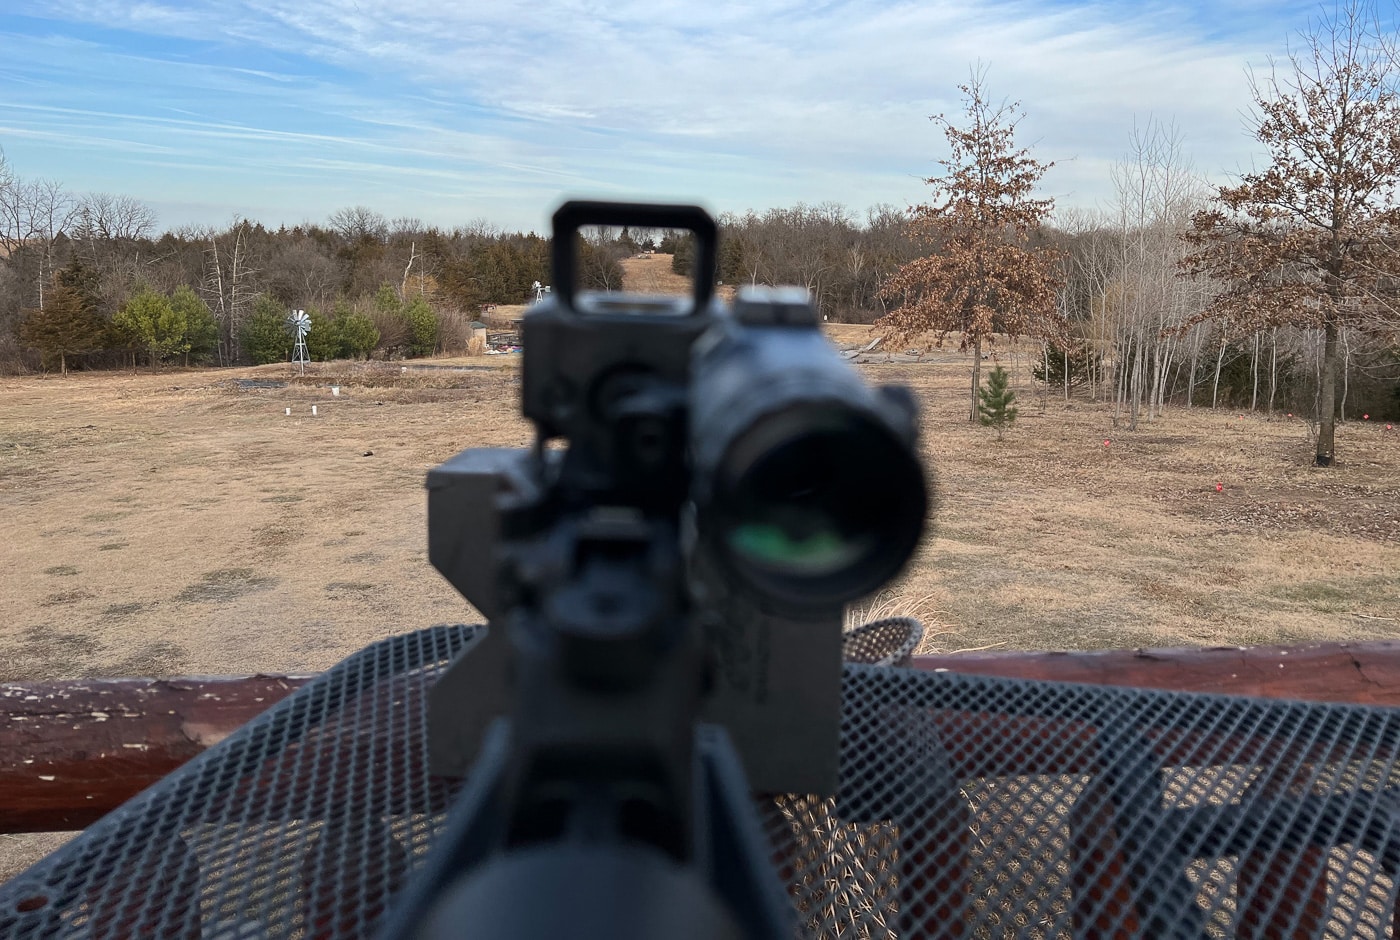 1x red dot sight at 500 yards